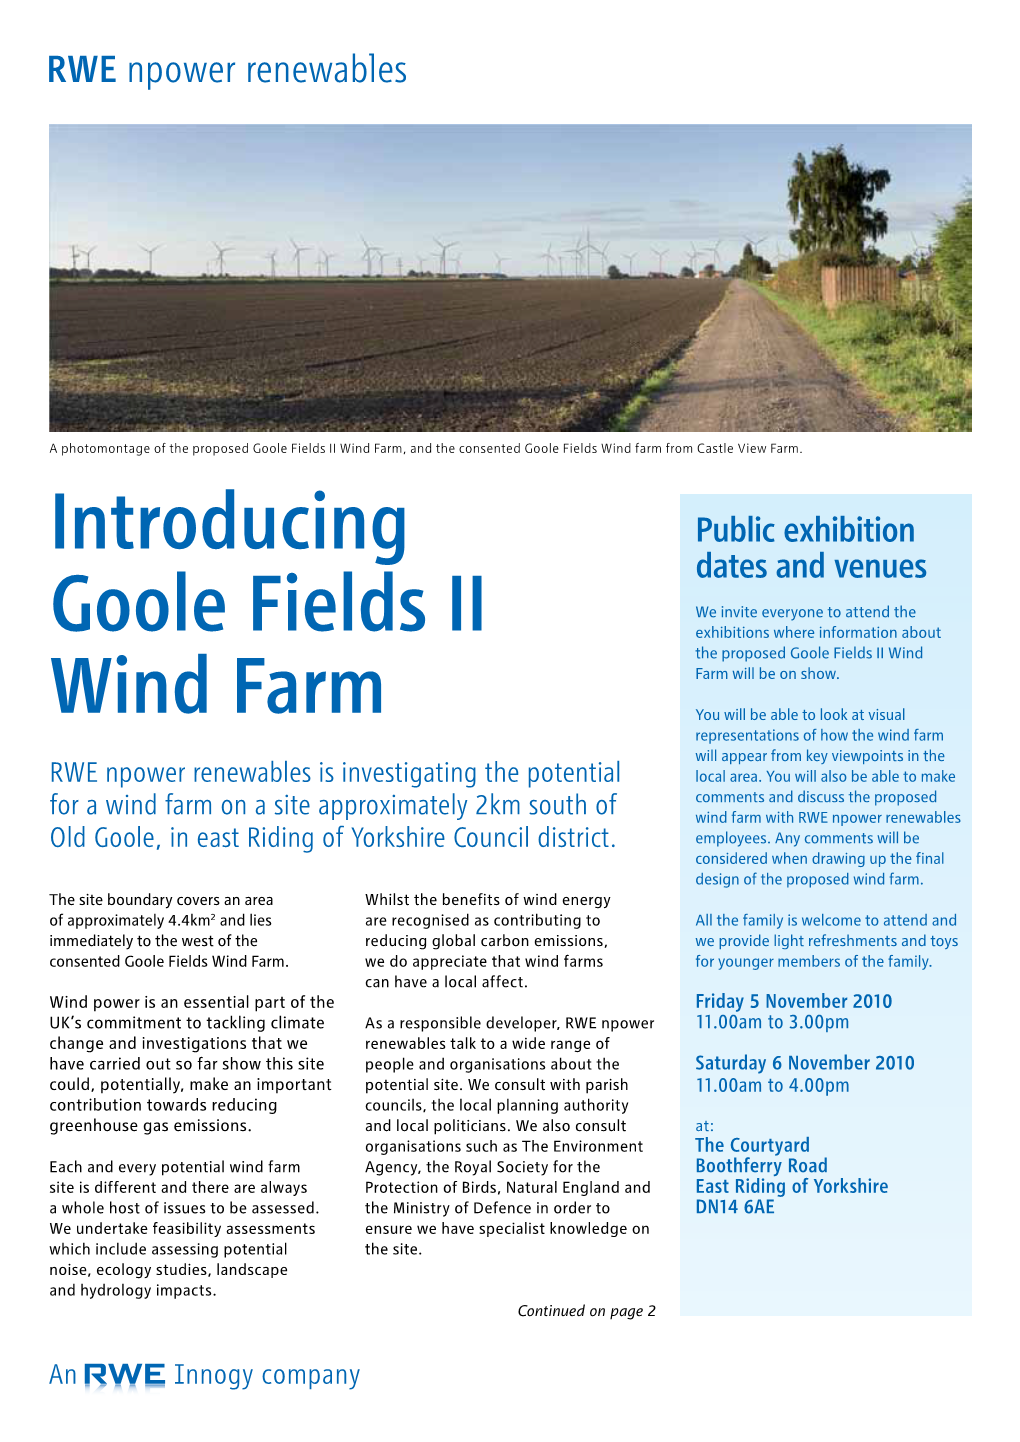 Introducing Goole Fields II Wind Farm